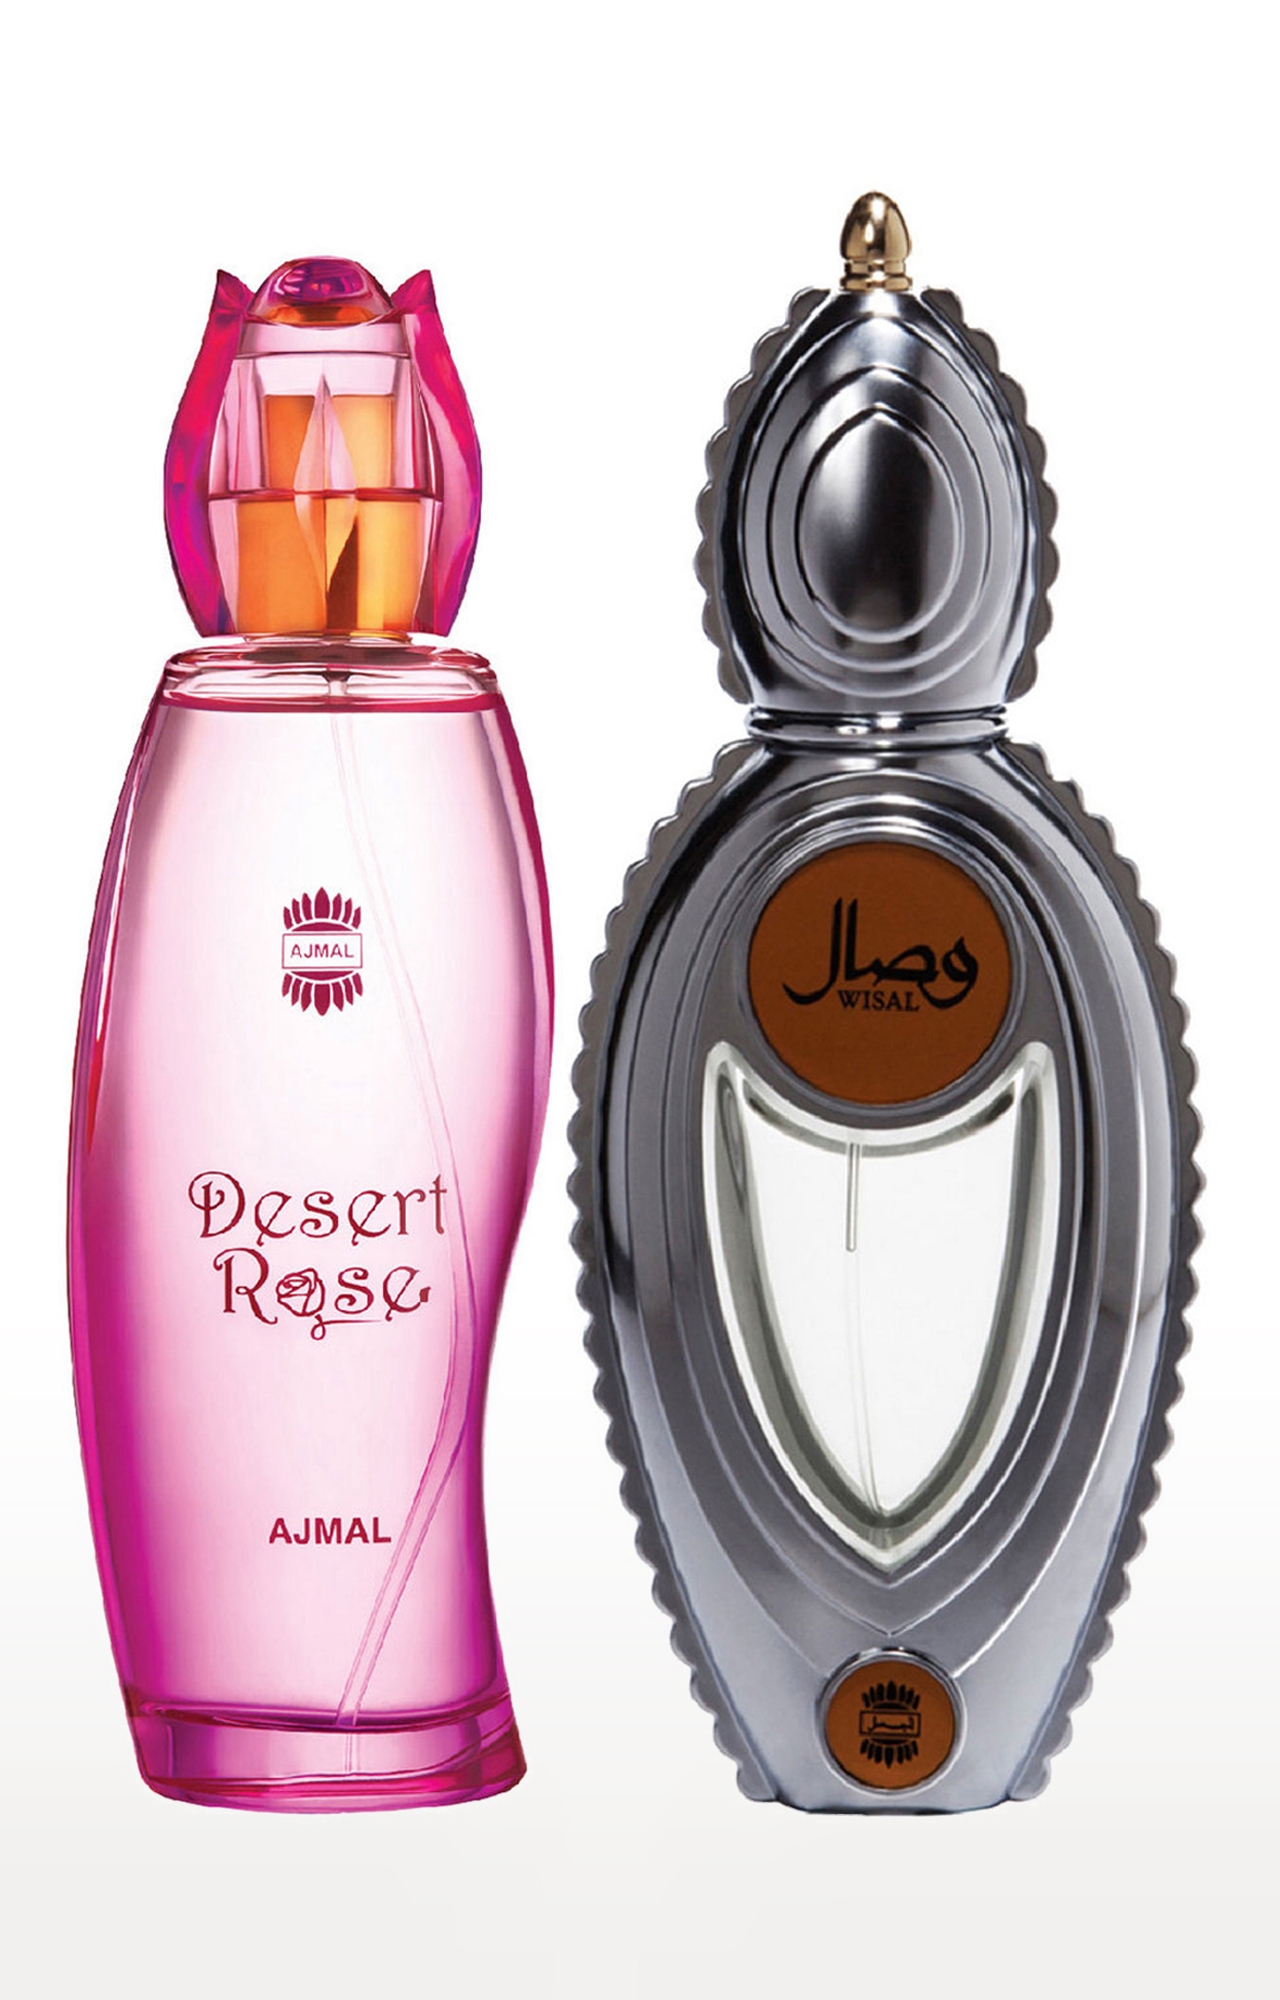 Ajmal | Ajmal Desert Rose EDP Oriental Perfume 100ml for Women and Wisal EDP Musky Perfume 50ml for Women 0